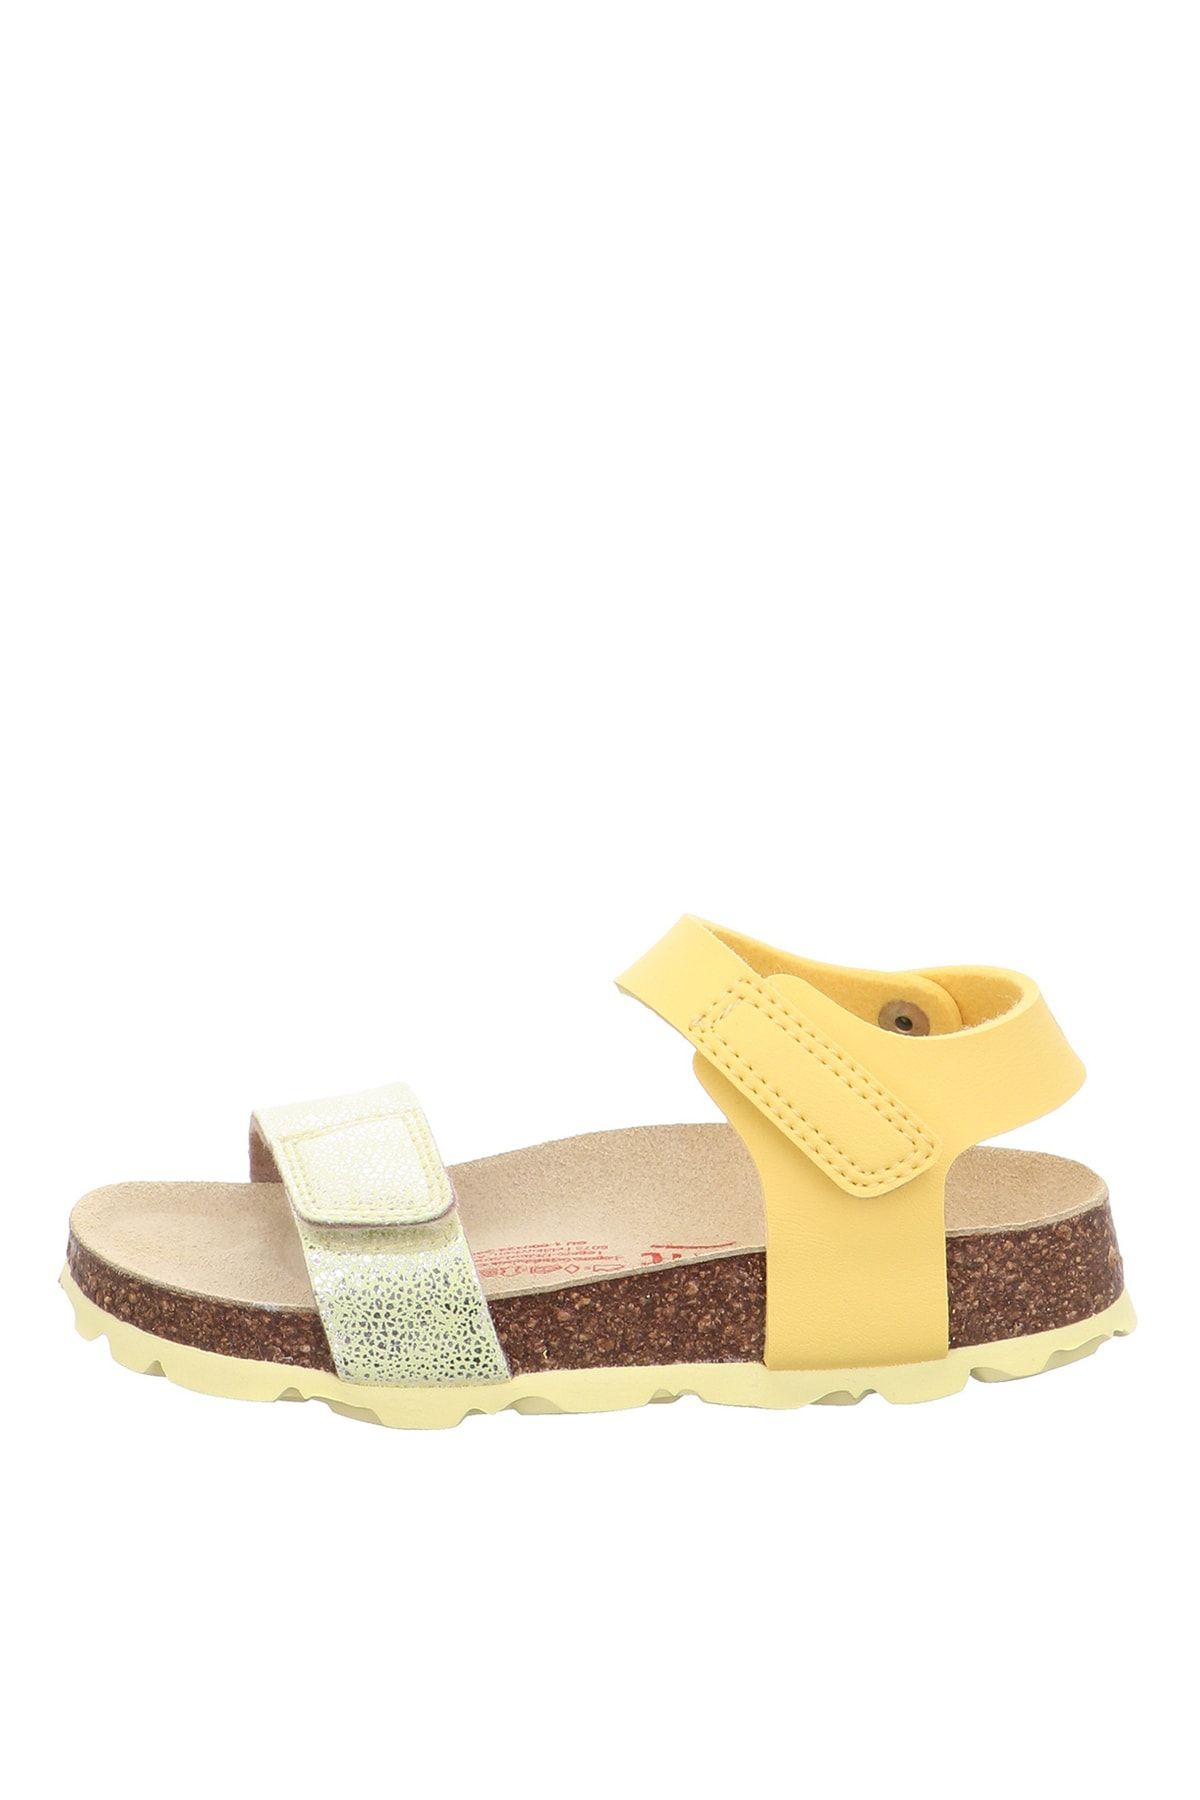 Superfit Sarı Kız Çocuk Sandalet Bıos 1-000123-6000-3